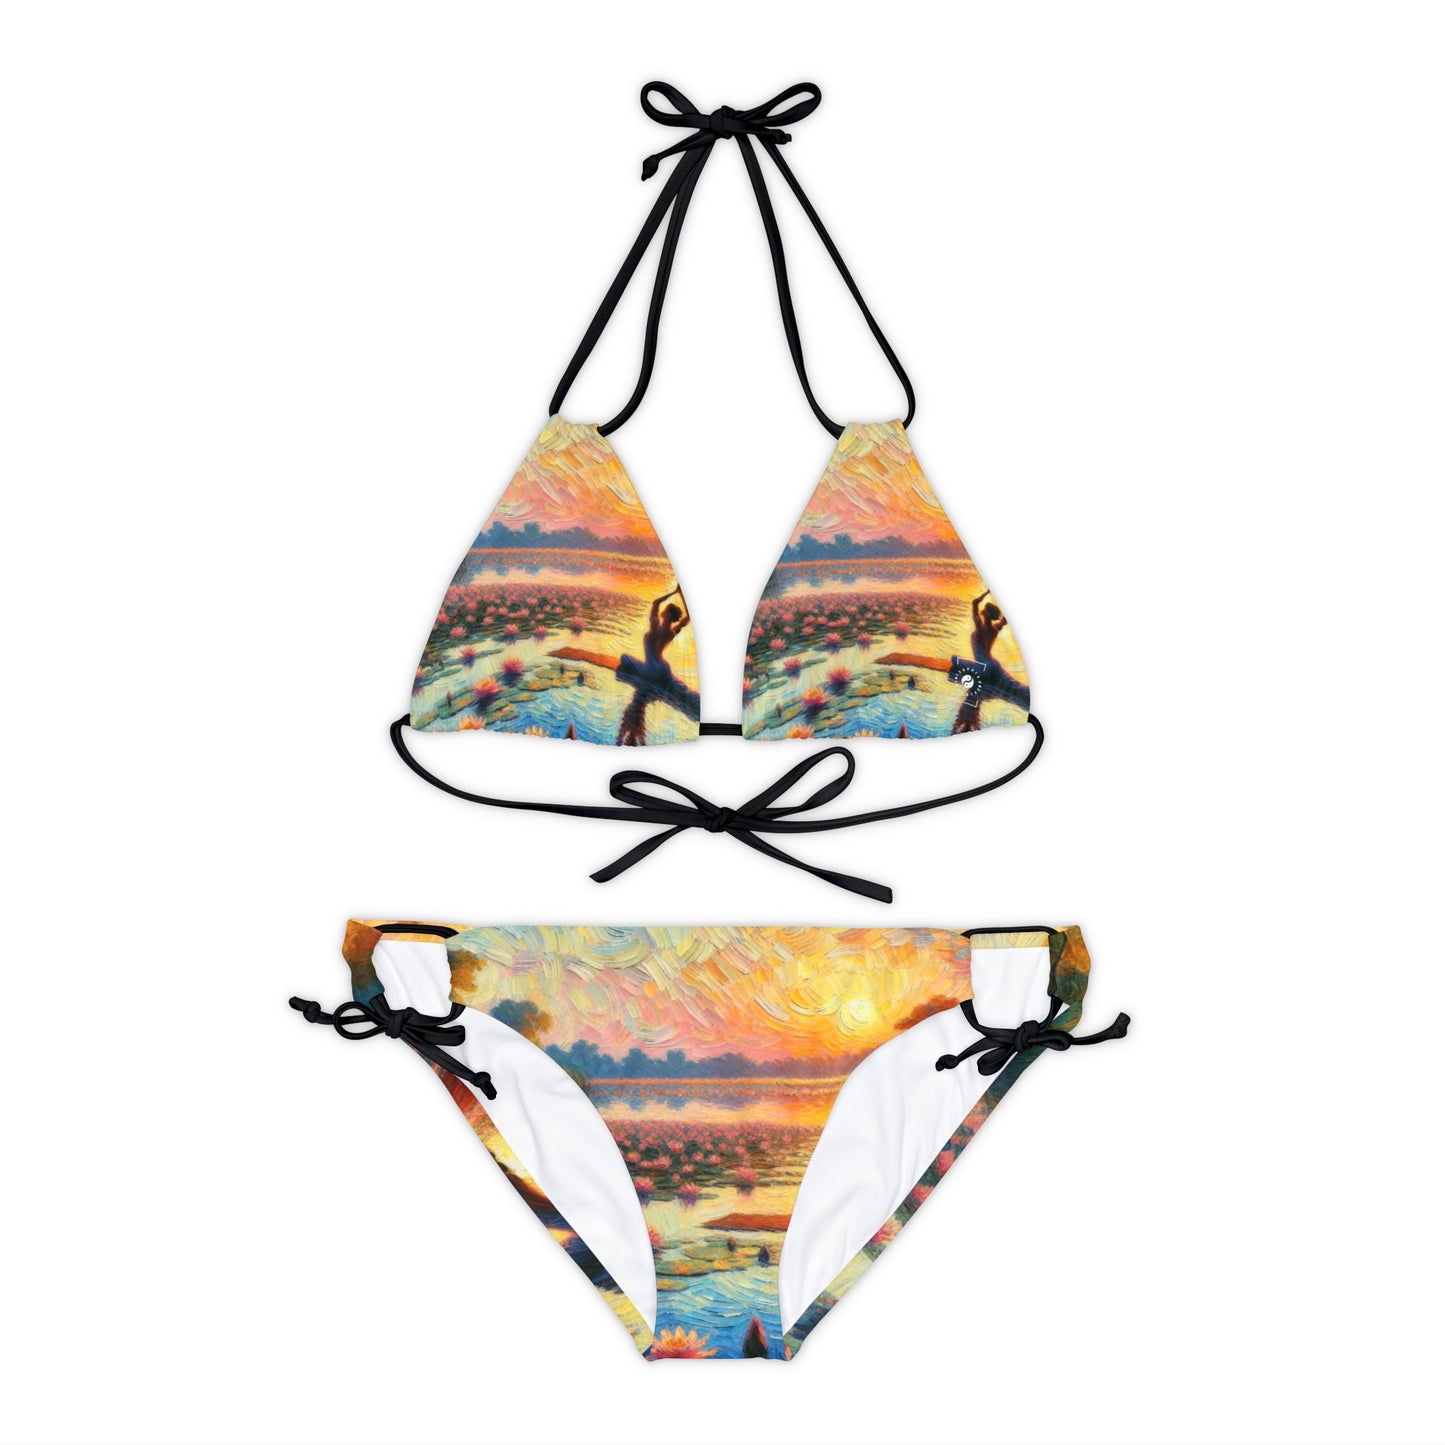 Sebastiano Del Fiore - Lace-up Bikini Set